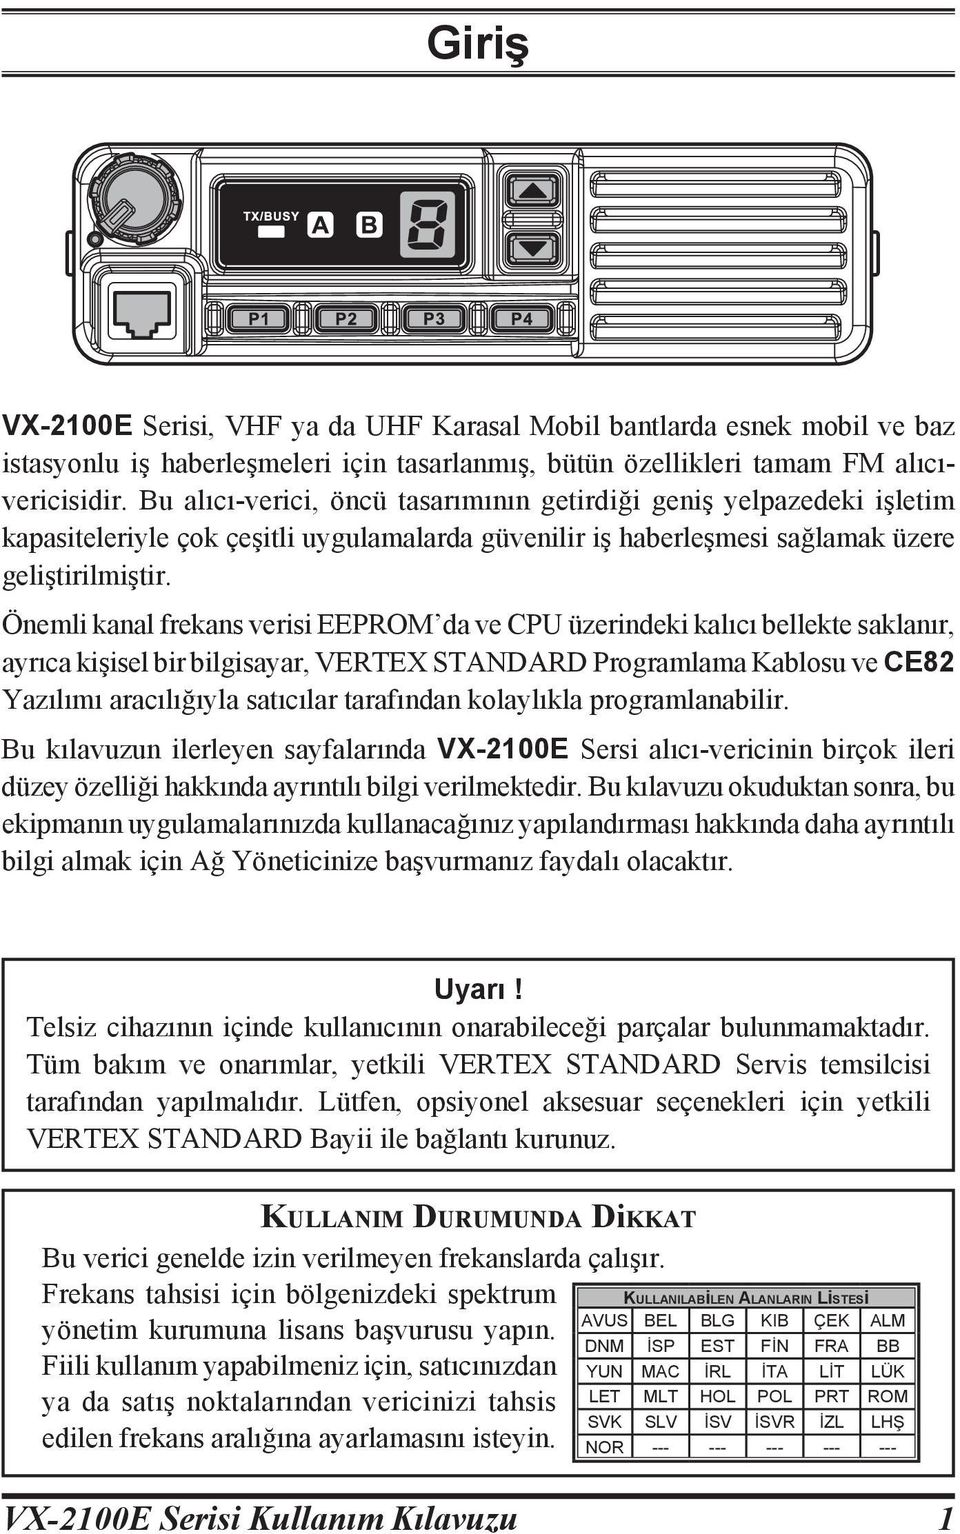 Önemli kanal frekans verisi EEPROM da ve CPU üzerindeki kalıcı bellekte saklanır, ayrıca kişisel bir bilgisayar, VERTEX STANDARD Programlama Kablosu ve CE82 Yazılımı aracılığıyla satıcılar tarafından